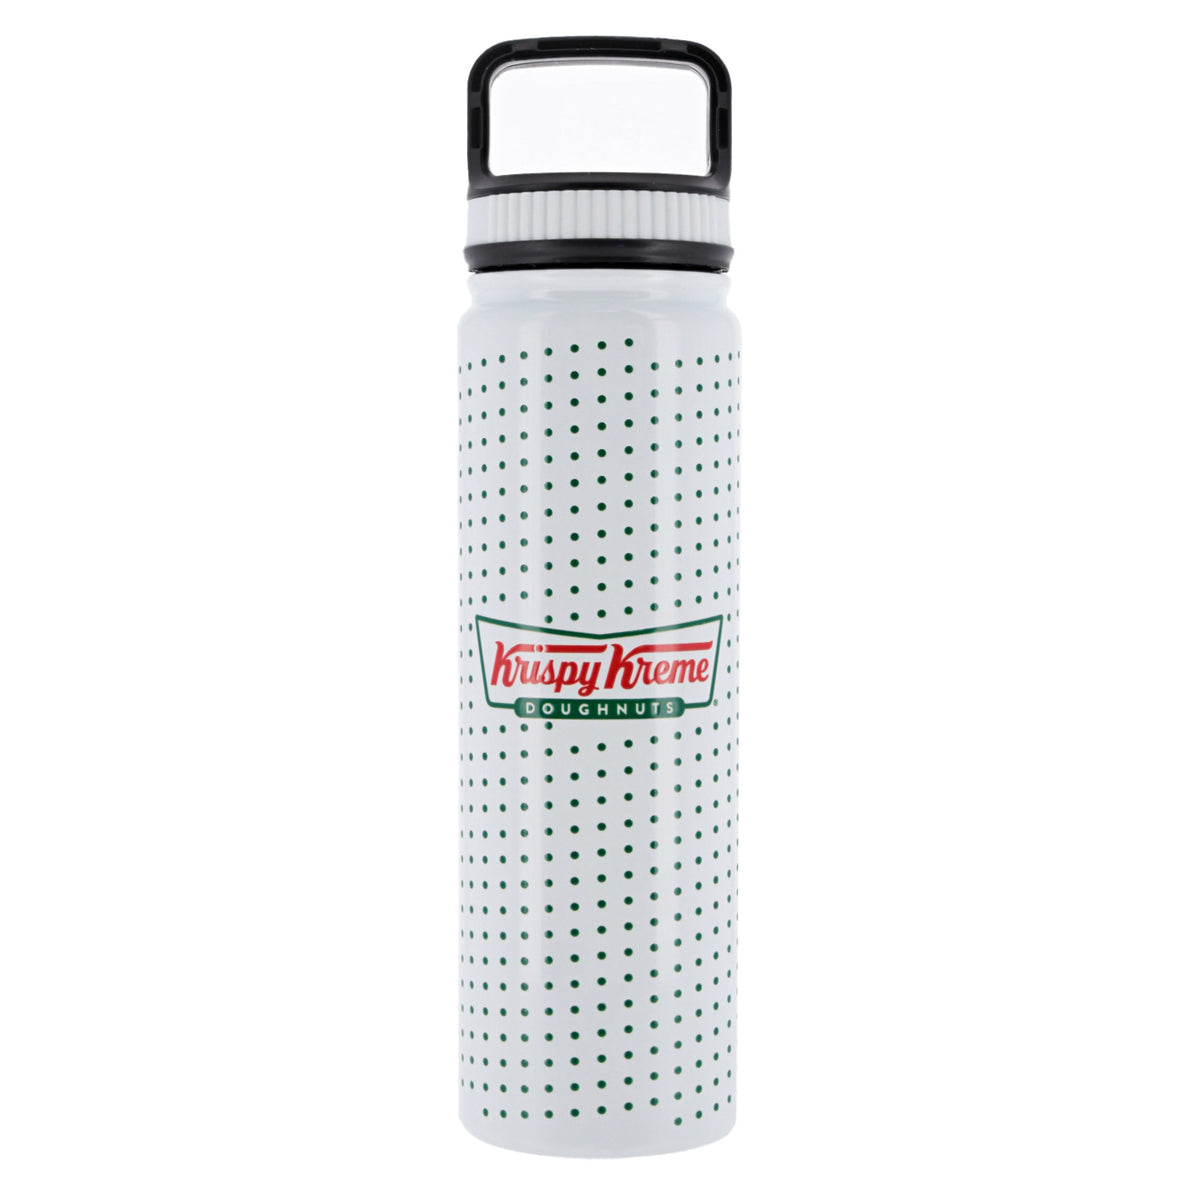 H2O Spray Bottle Holds 10 oz - Cricket Company